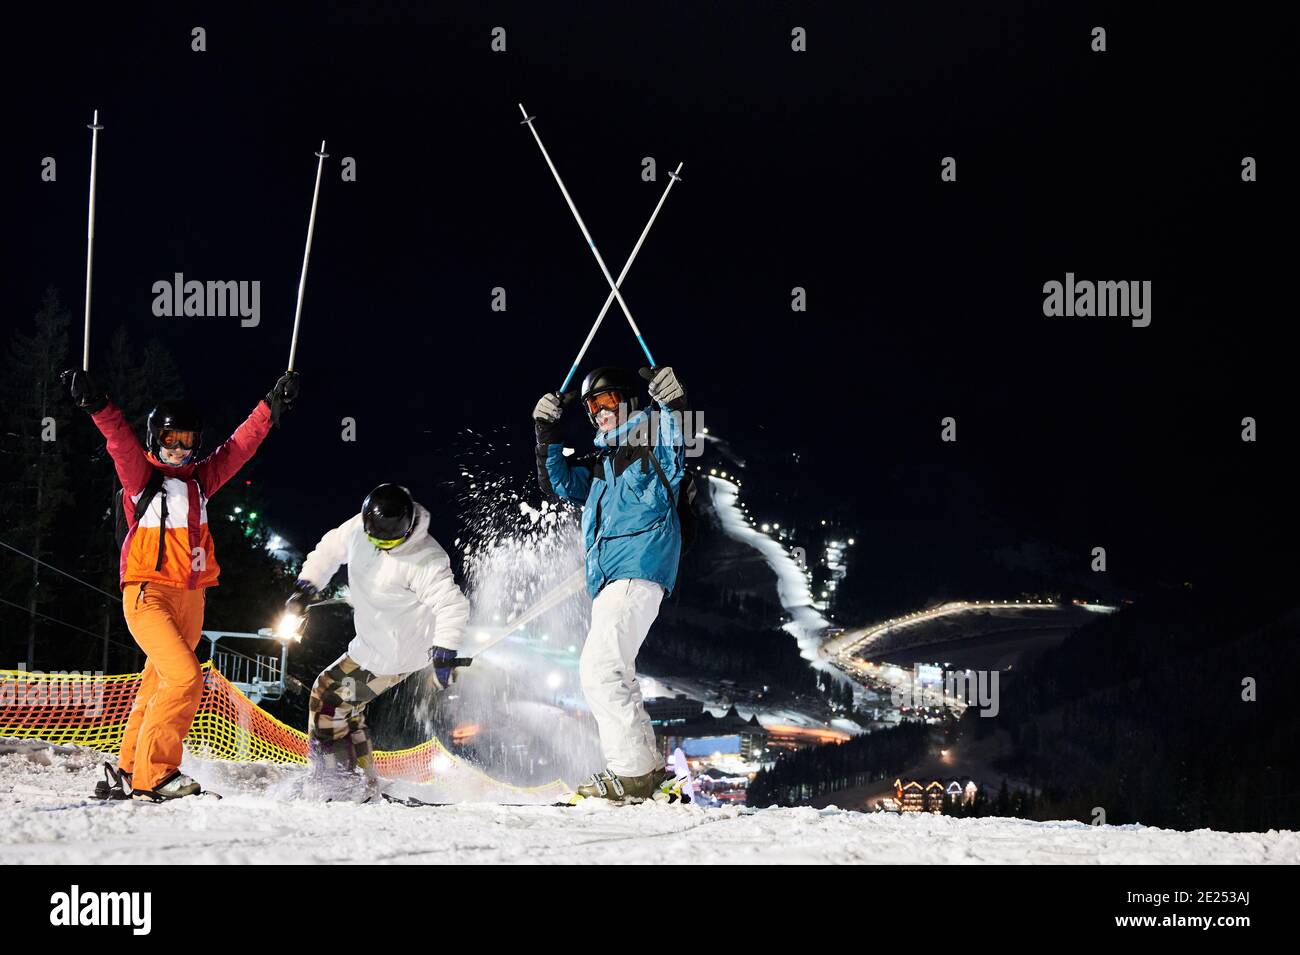 Amis skieurs en hiver vestes et casques s'amuser à la station de ski en montagne en hiver, ski de nuit, pistes de ski éclairées sont en arrière-plan. Concept de mode de vie sain Banque D'Images